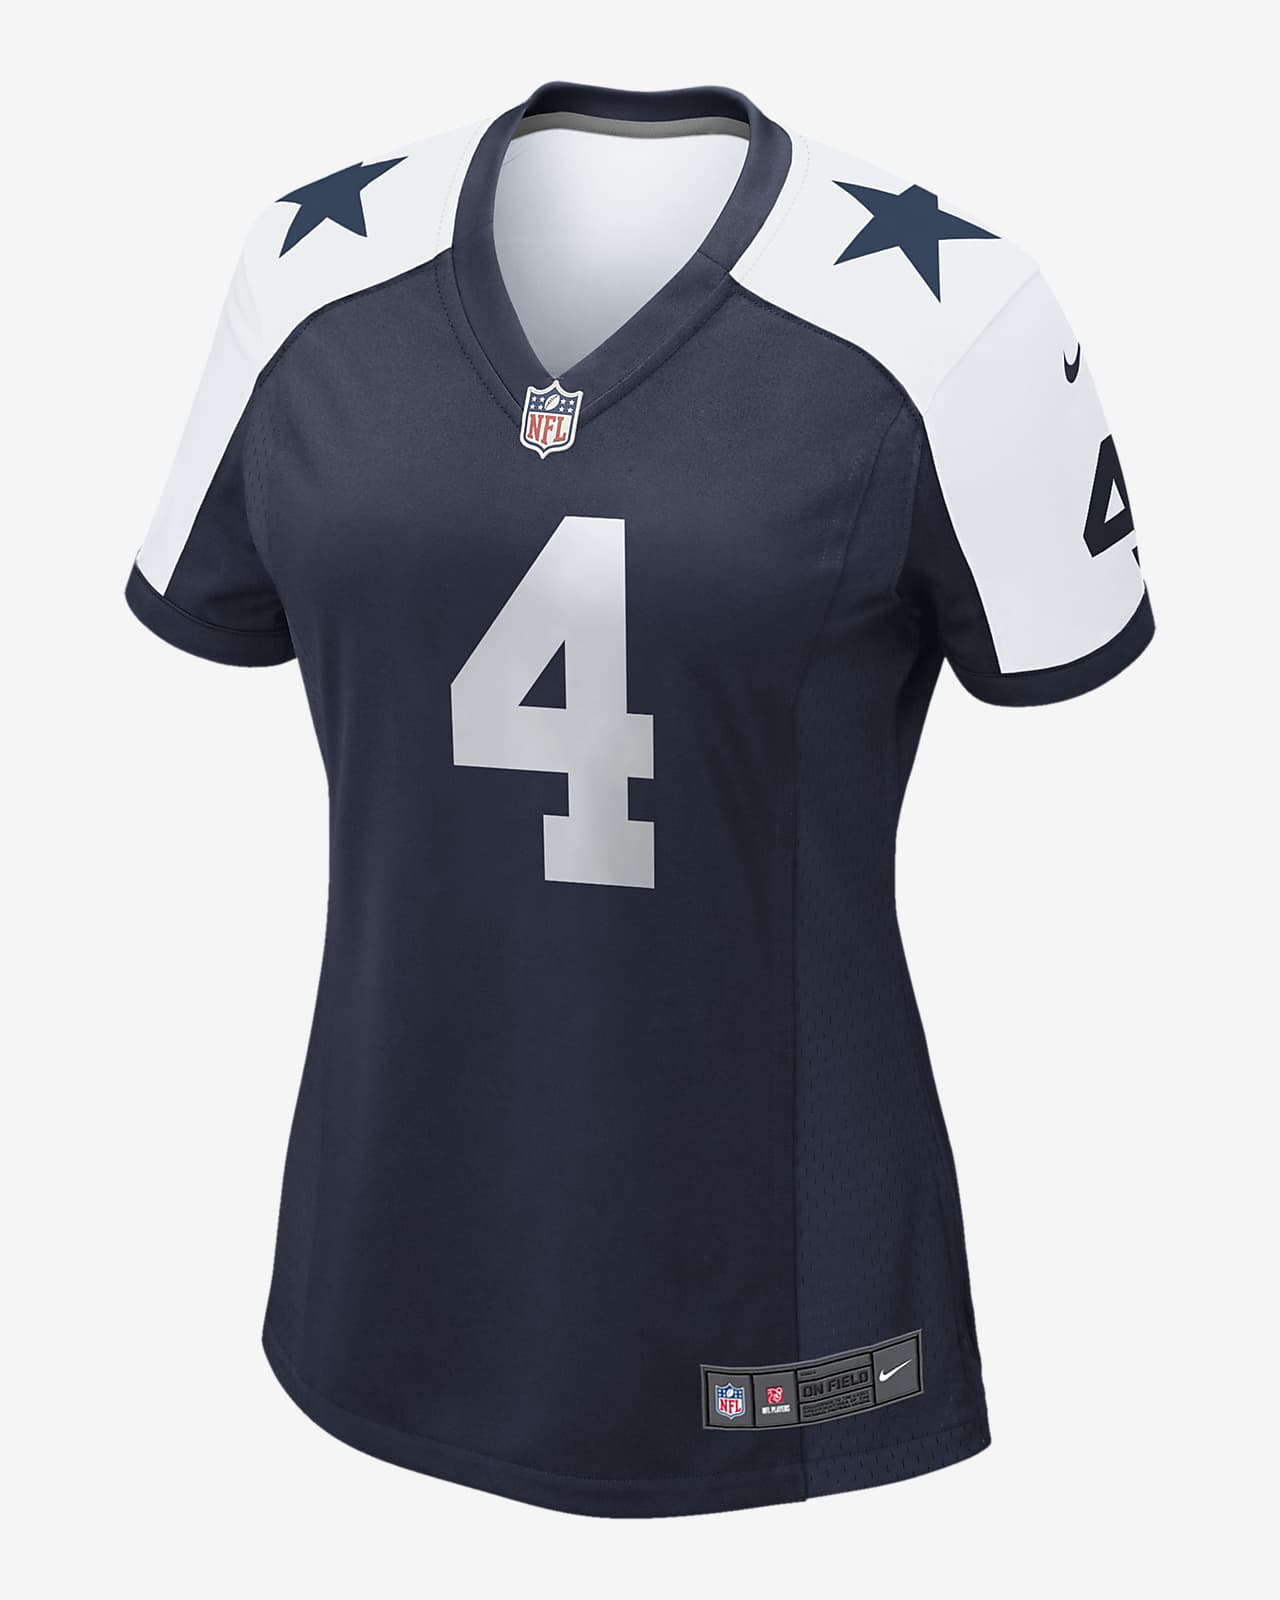 Camiseta de fútbol americano Game para mujer NFL Dallas Cowboys (Dak Prescott)